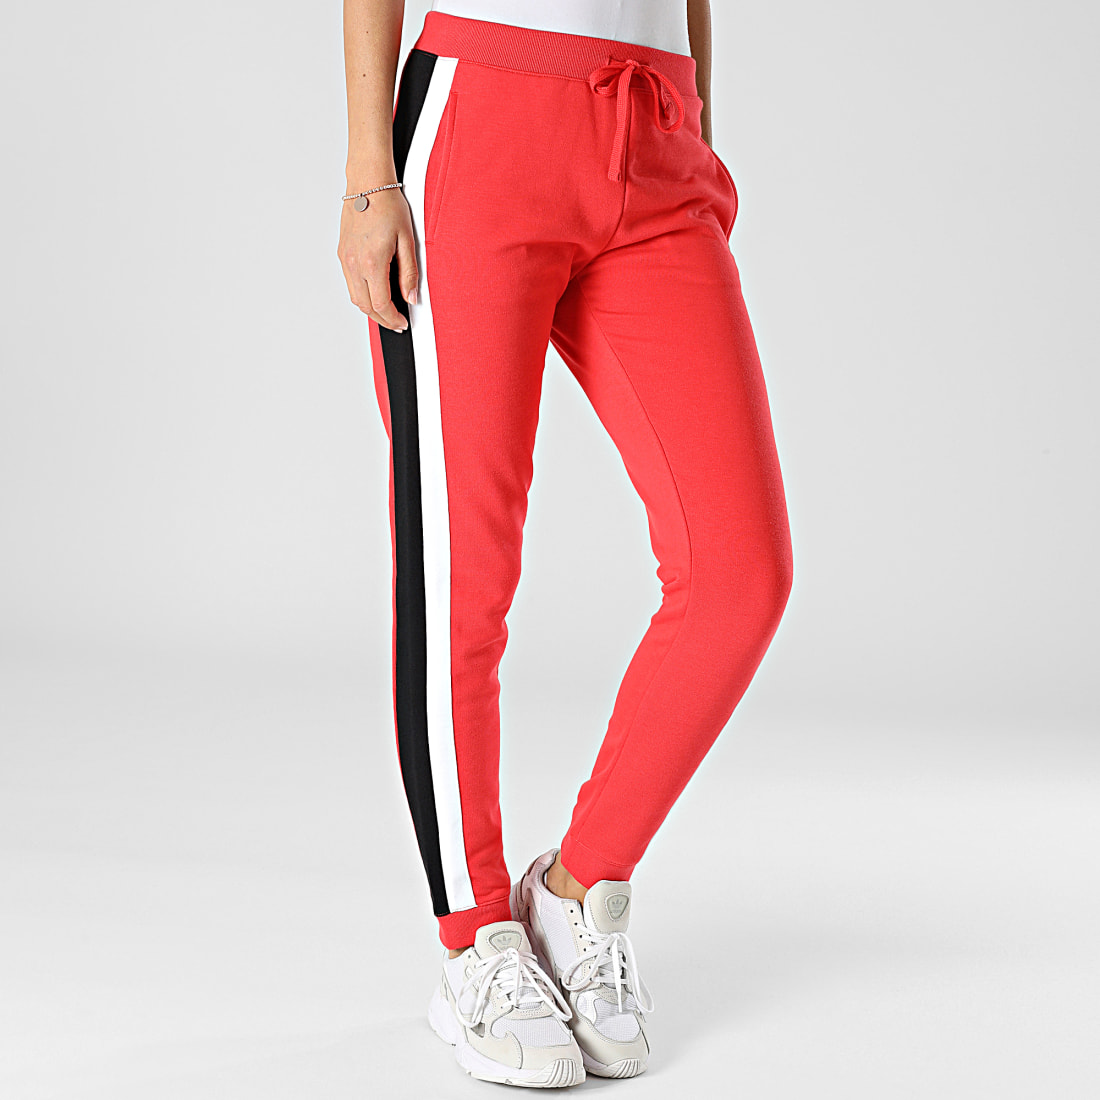 Pantalon Jogging de Sport et de Style Couleur Rouge - Sodishop